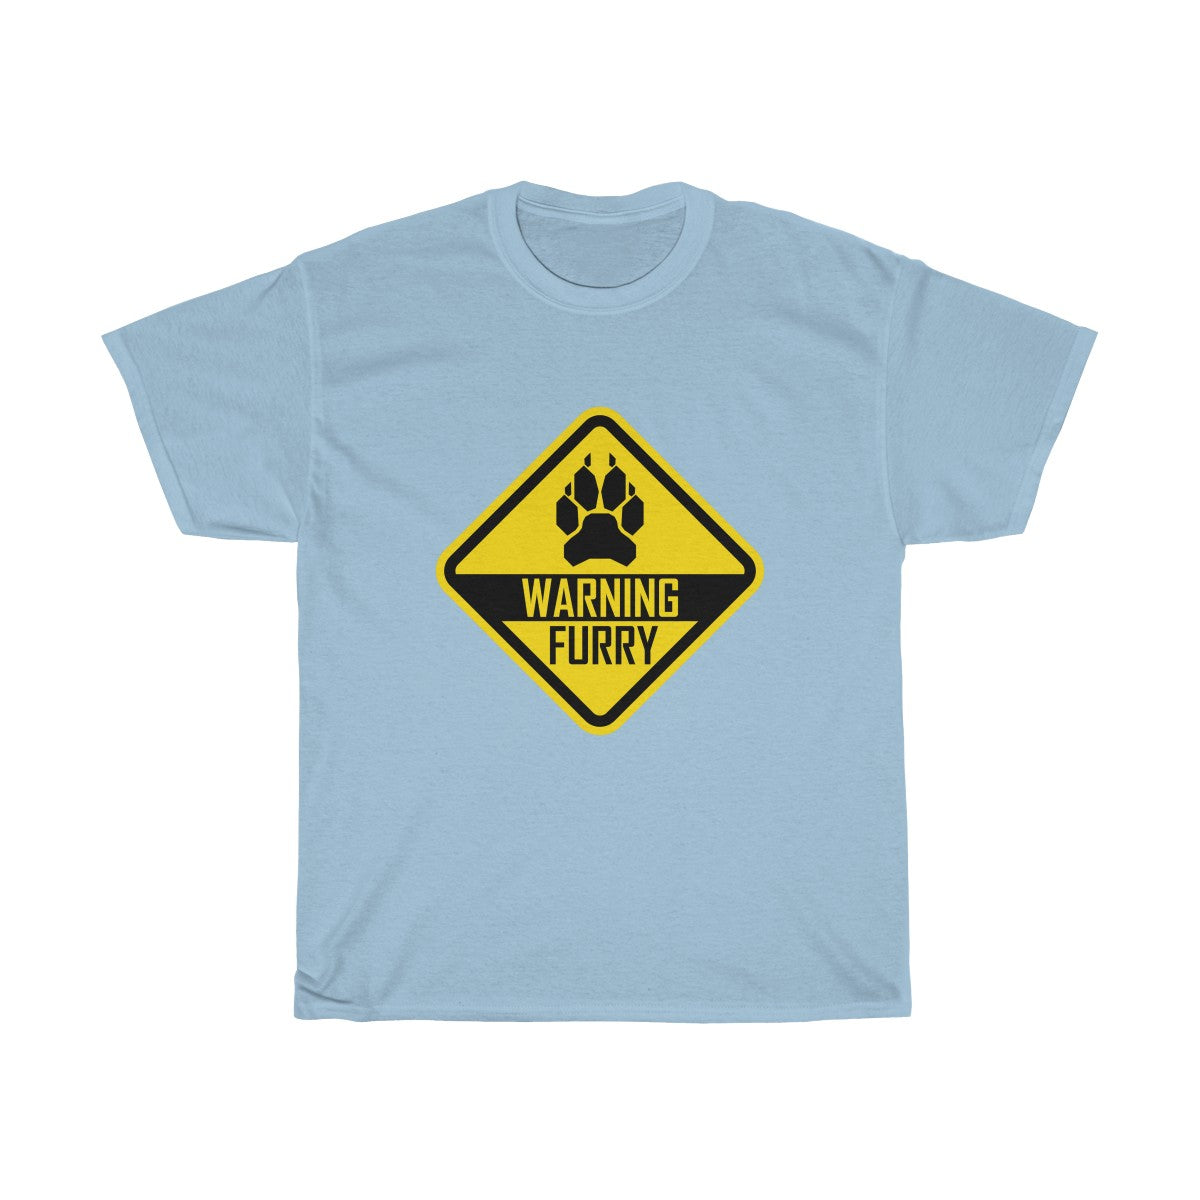 Warning Canine - T-Shirt T-Shirt Wexon Light Blue S 